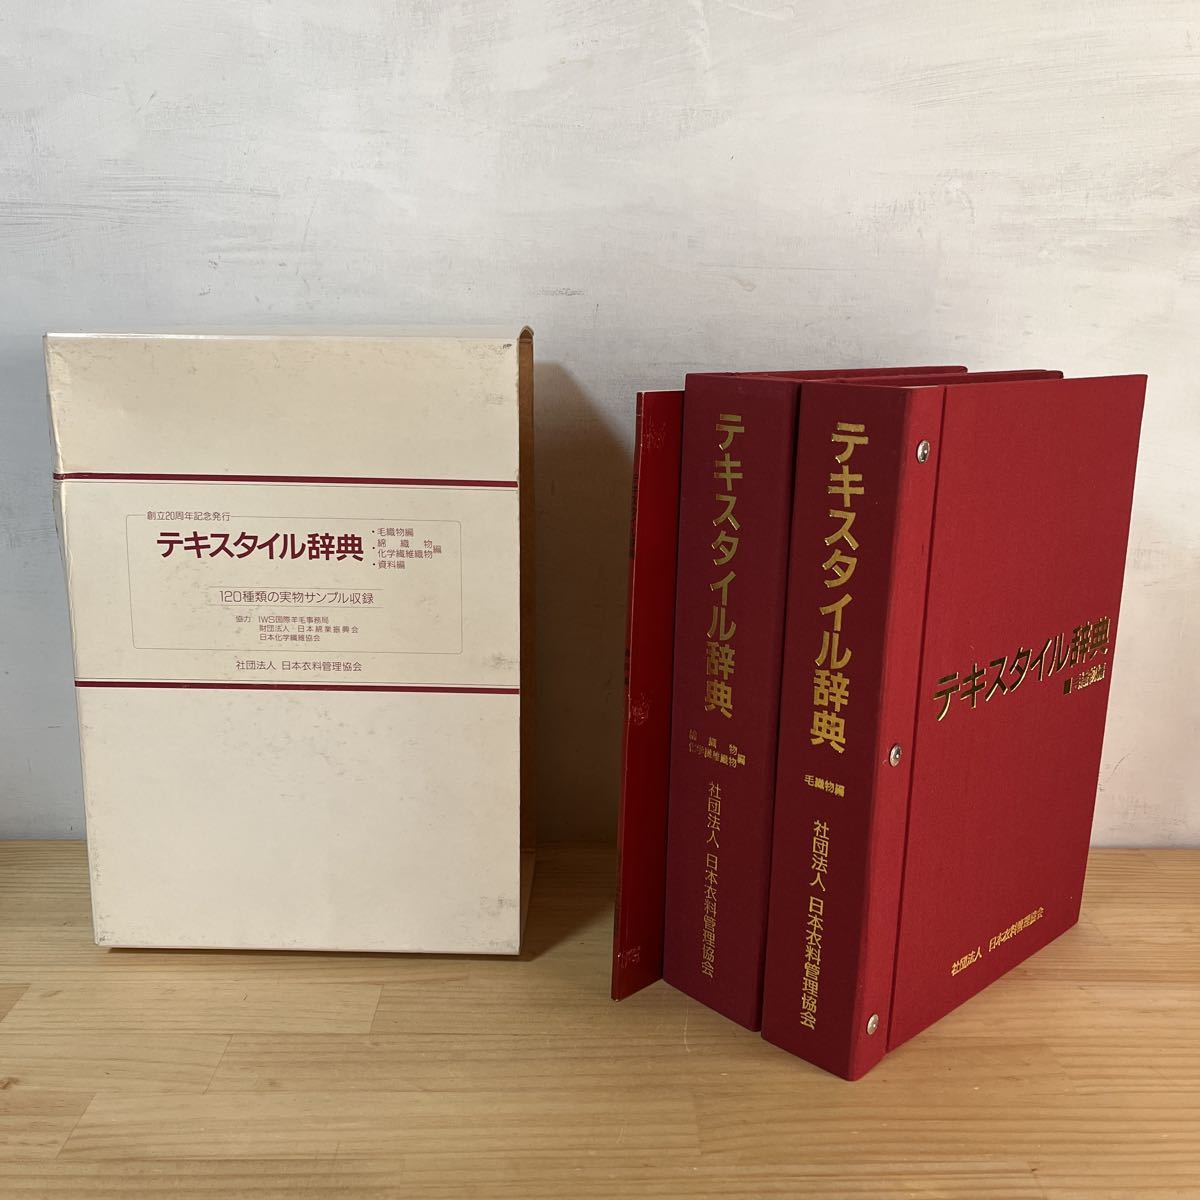 日本衣料管理協会創立20周年『テキスタイル辞典』 驚きの値段 40.0